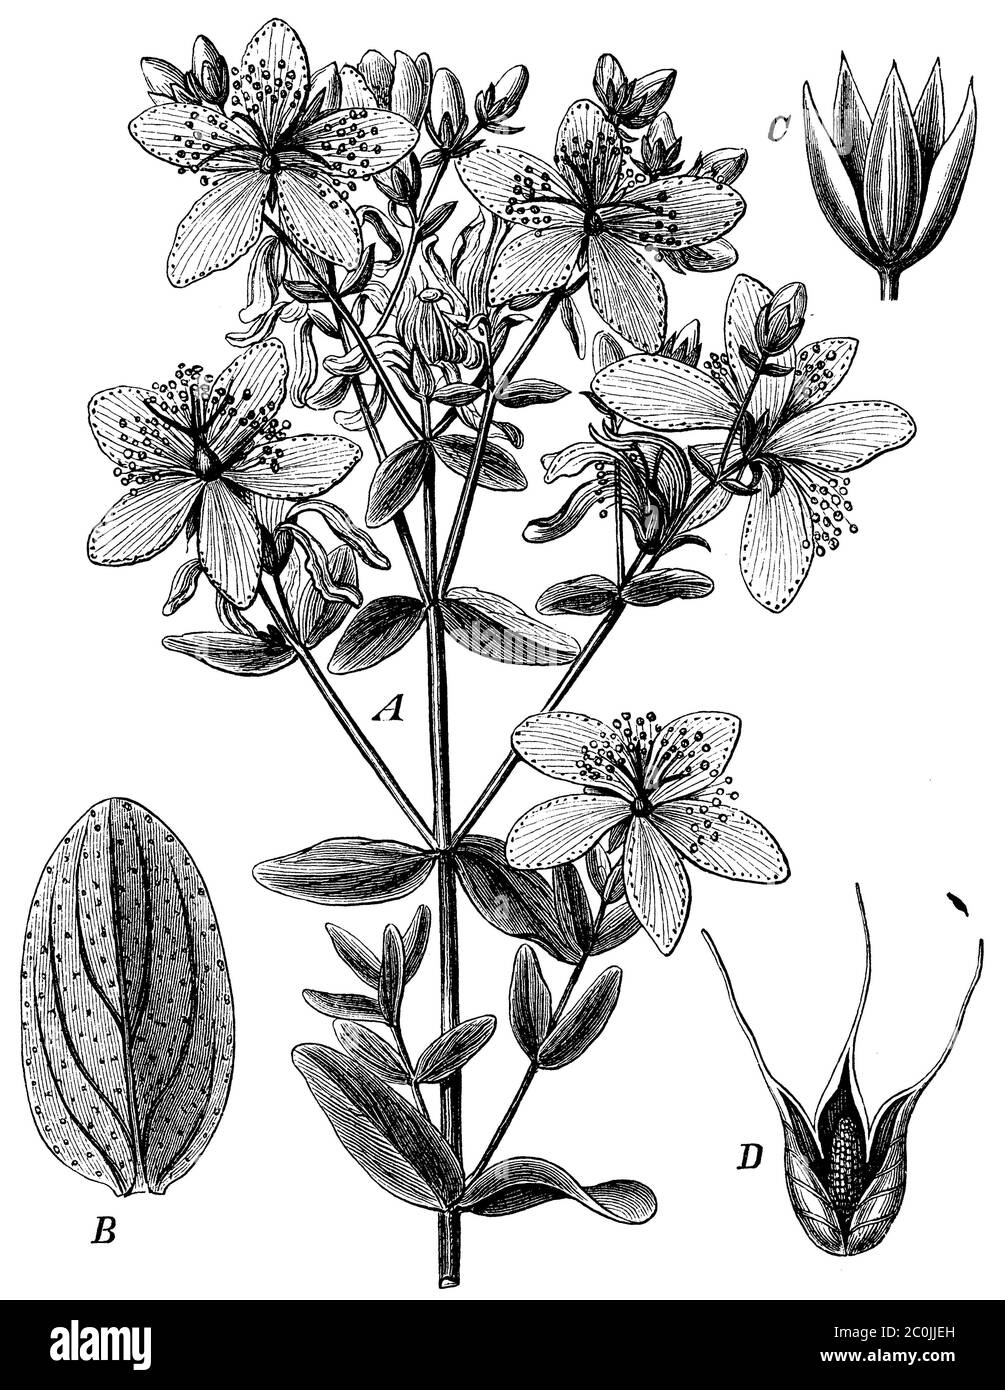 Saint John's wort / Hypericum perforatum / Echtes Johanniskraut (botany book, 1884) Stock Photo